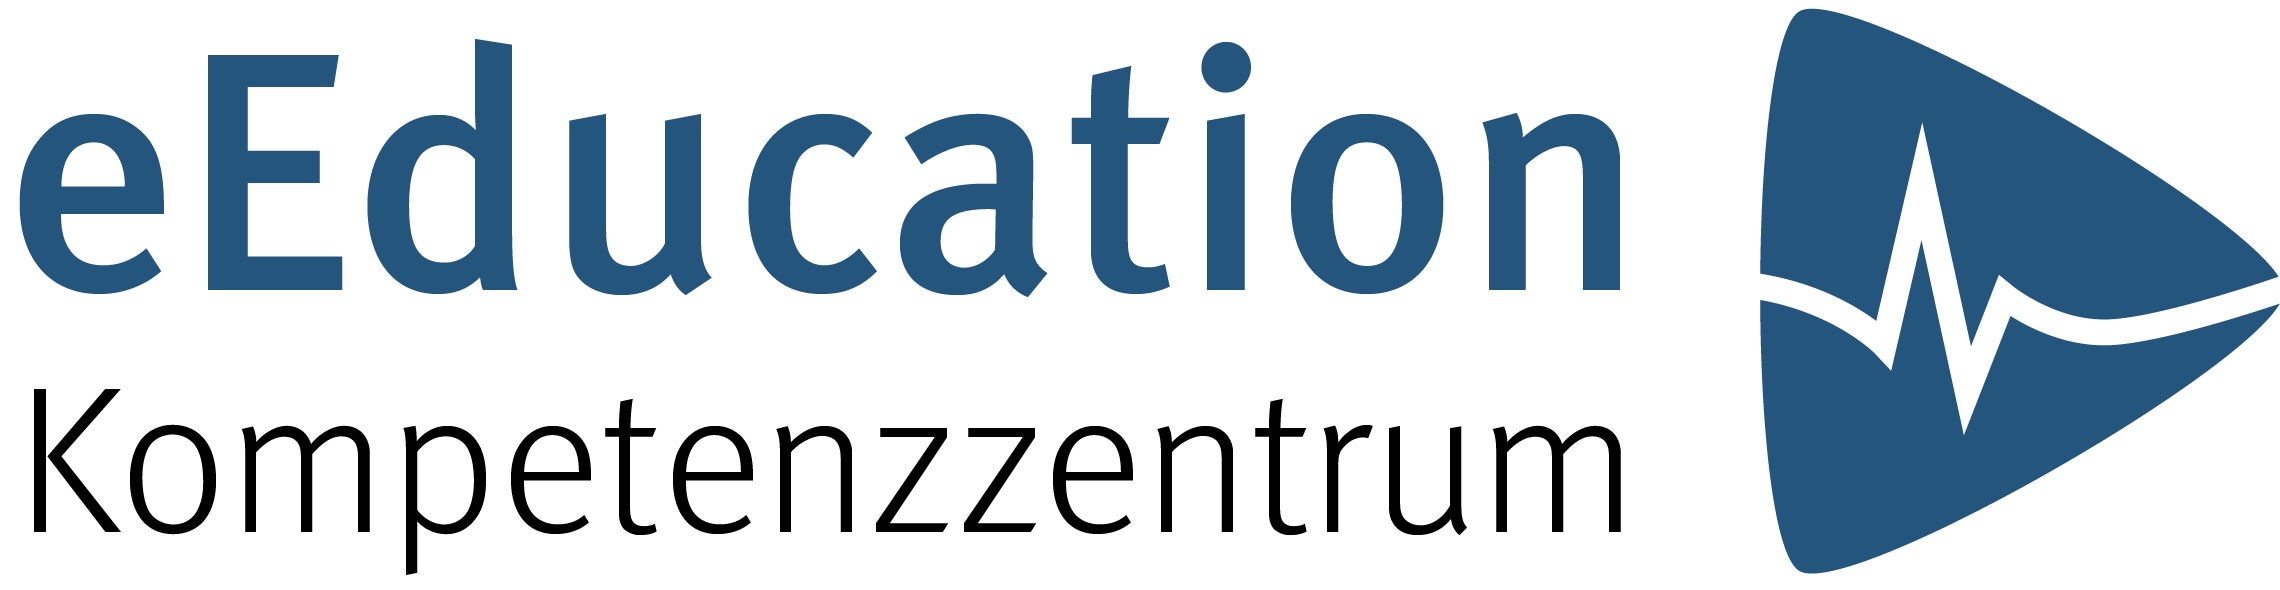 2021-01-15_schafnitzel_vr-lab_logo eEducation.jpg